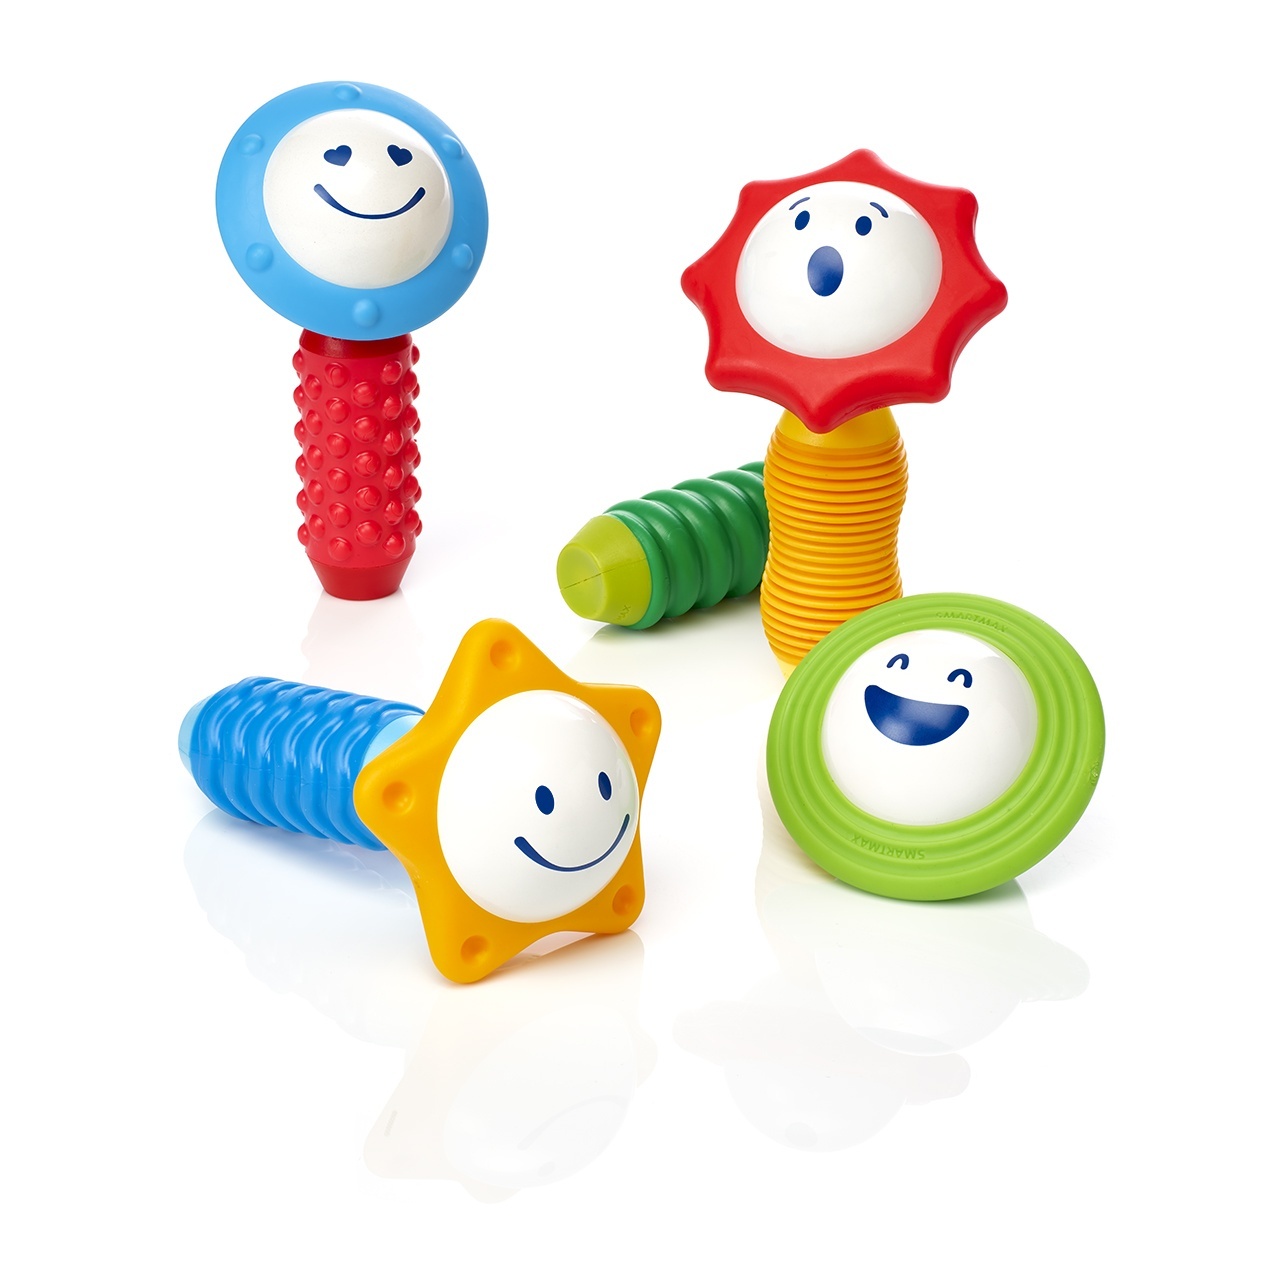 Doe herleven Betuttelen Landgoed Speelgoed voor kinderen van 1 jaar | Spelen is makkelijker leren -